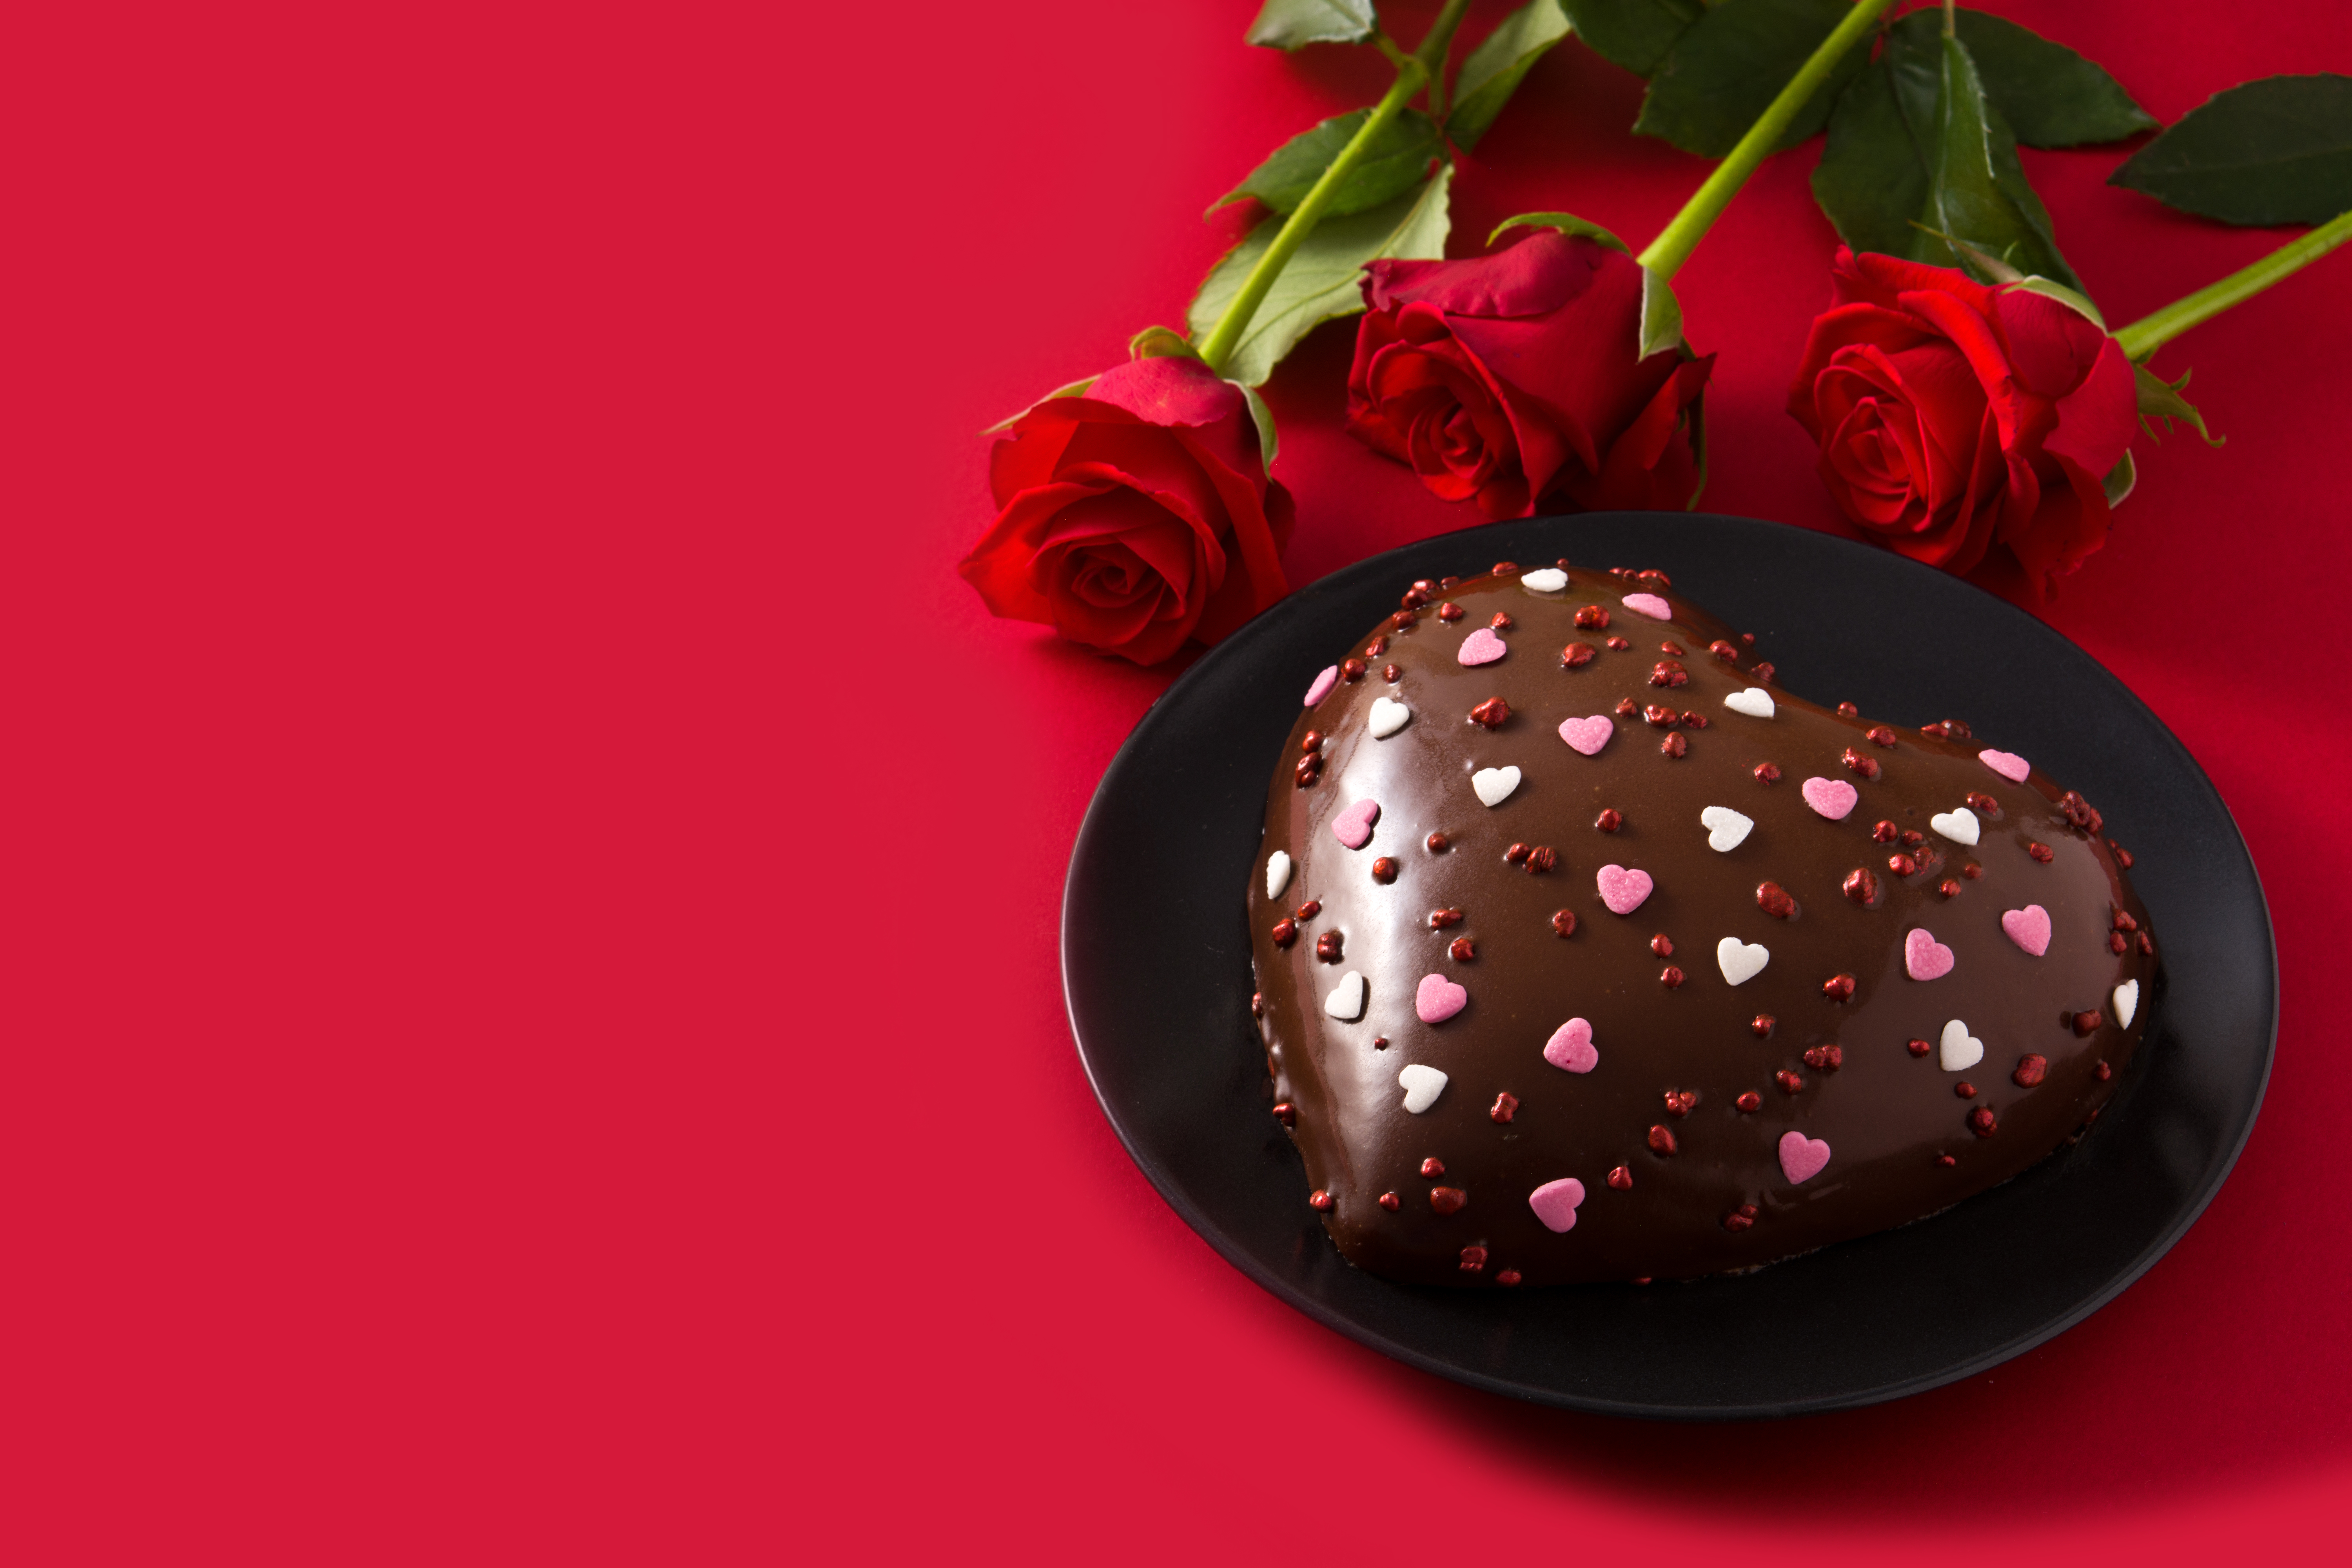 Virágcsokor, csoki, romantikus vacsora - Ön mit gondol a Valentin-napról? -  Töltse ki a Blikkel a kvízt - Blikk